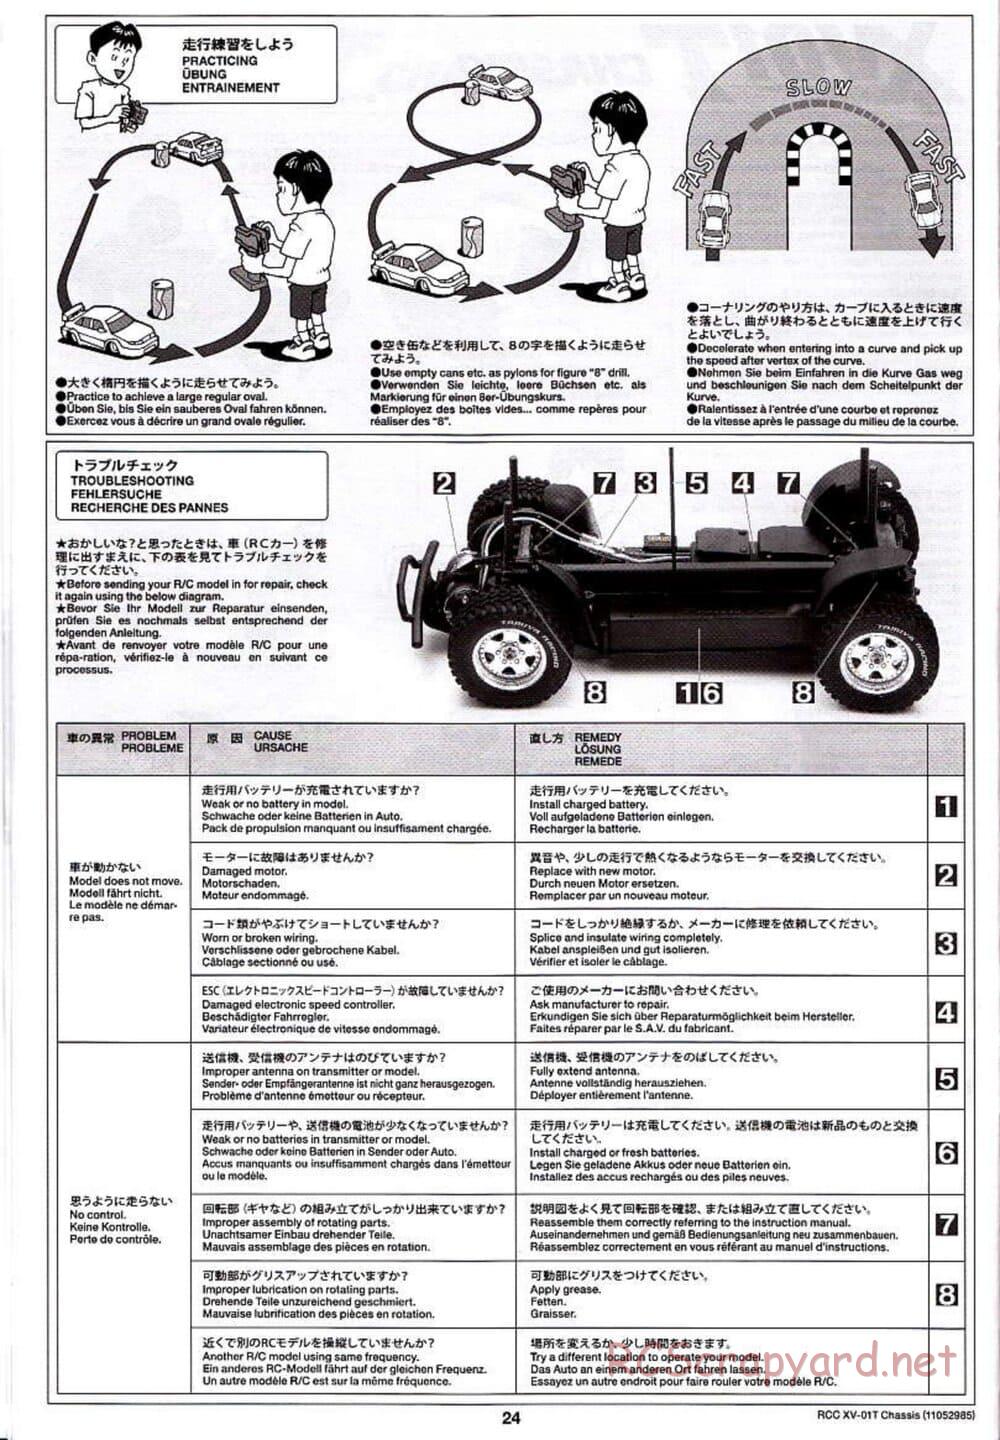 Tamiya - XV-01T Chassis - Manual - Page 24